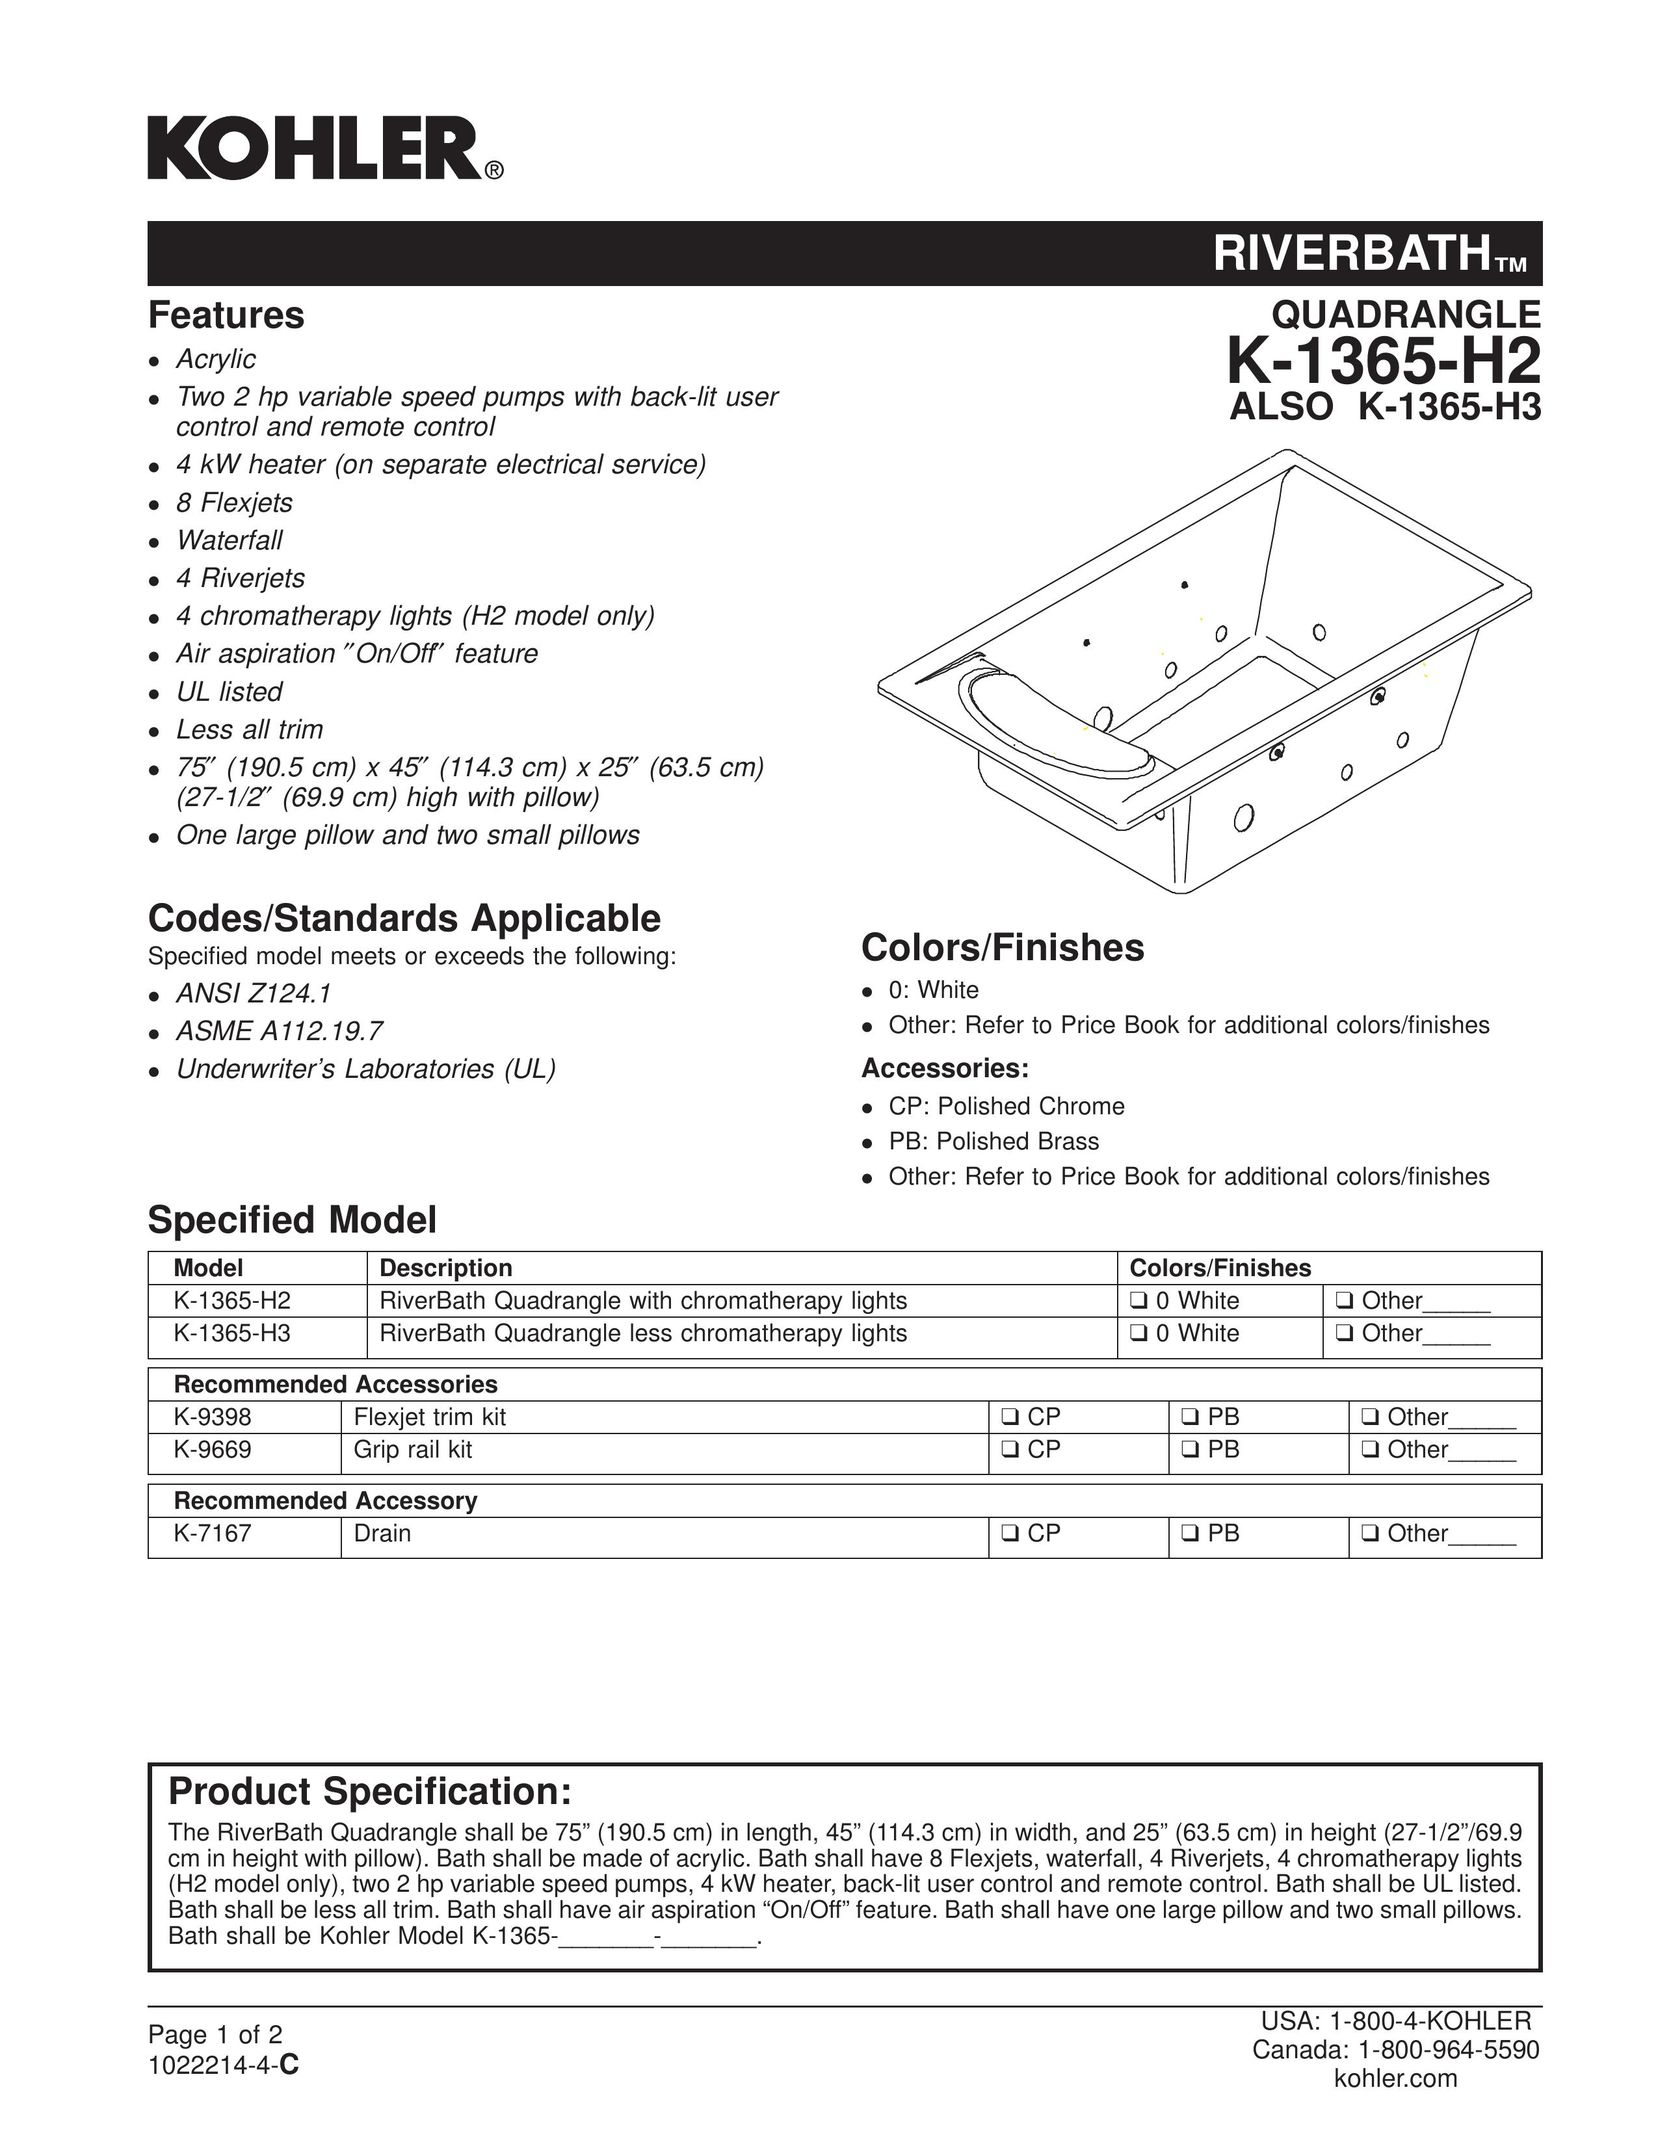 Kohler K-1365-H3 Plumbing Product User Manual